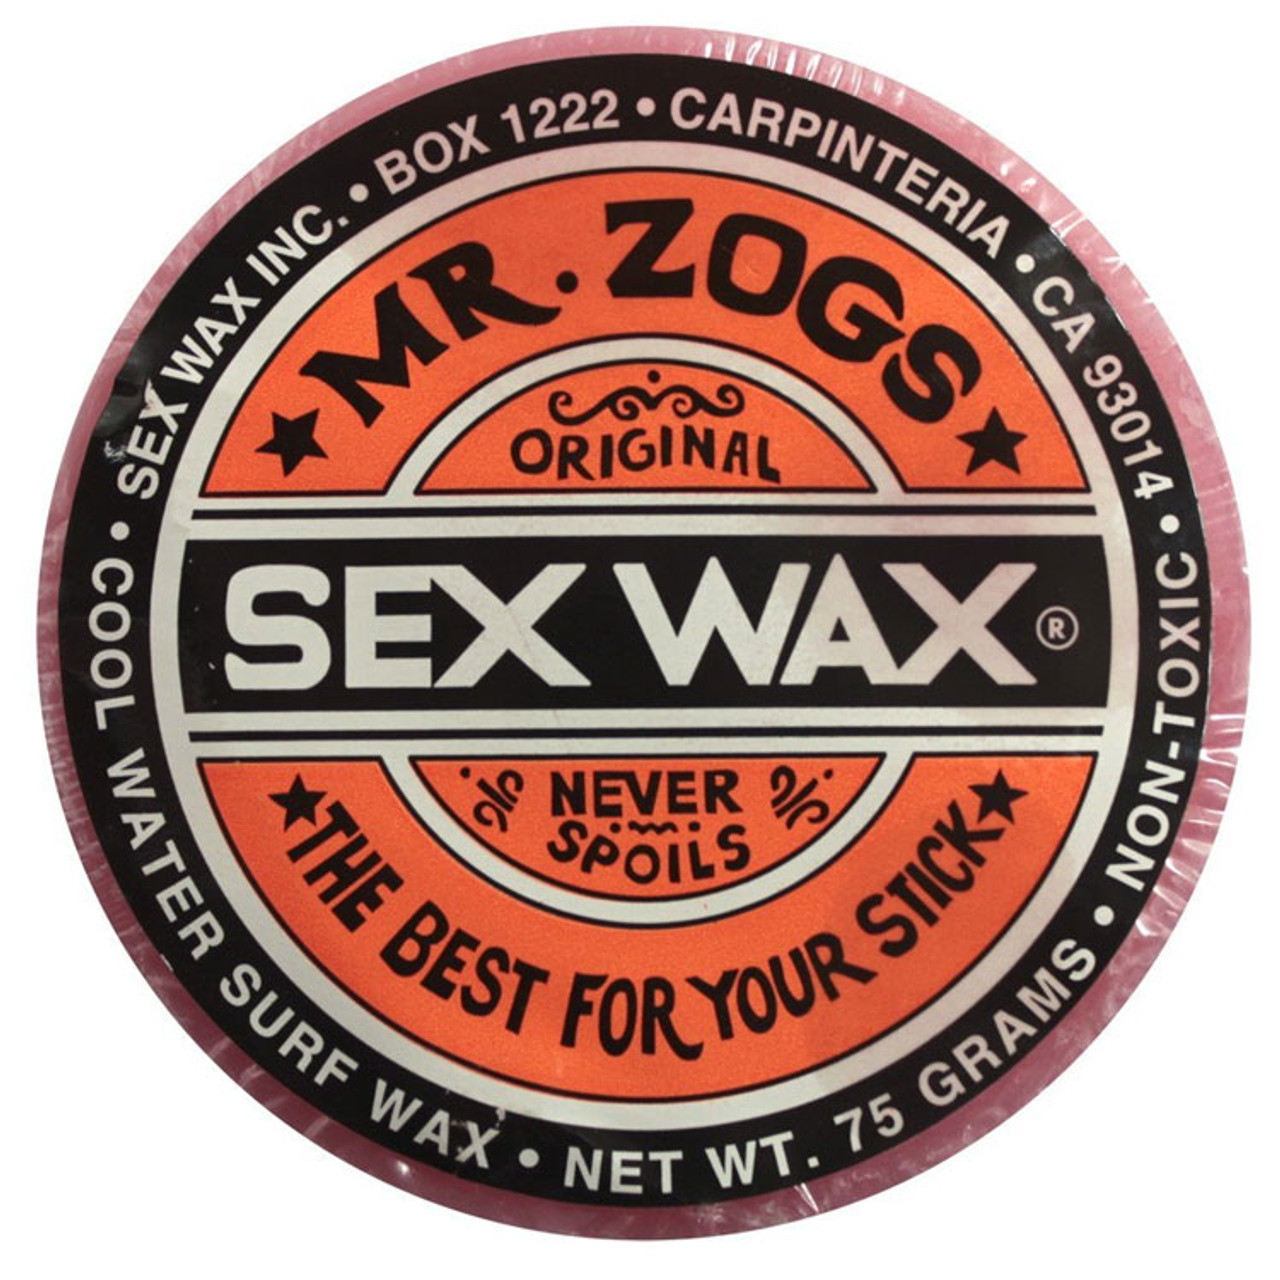 New MR ZOGS SEX WAX Hockey Accessories